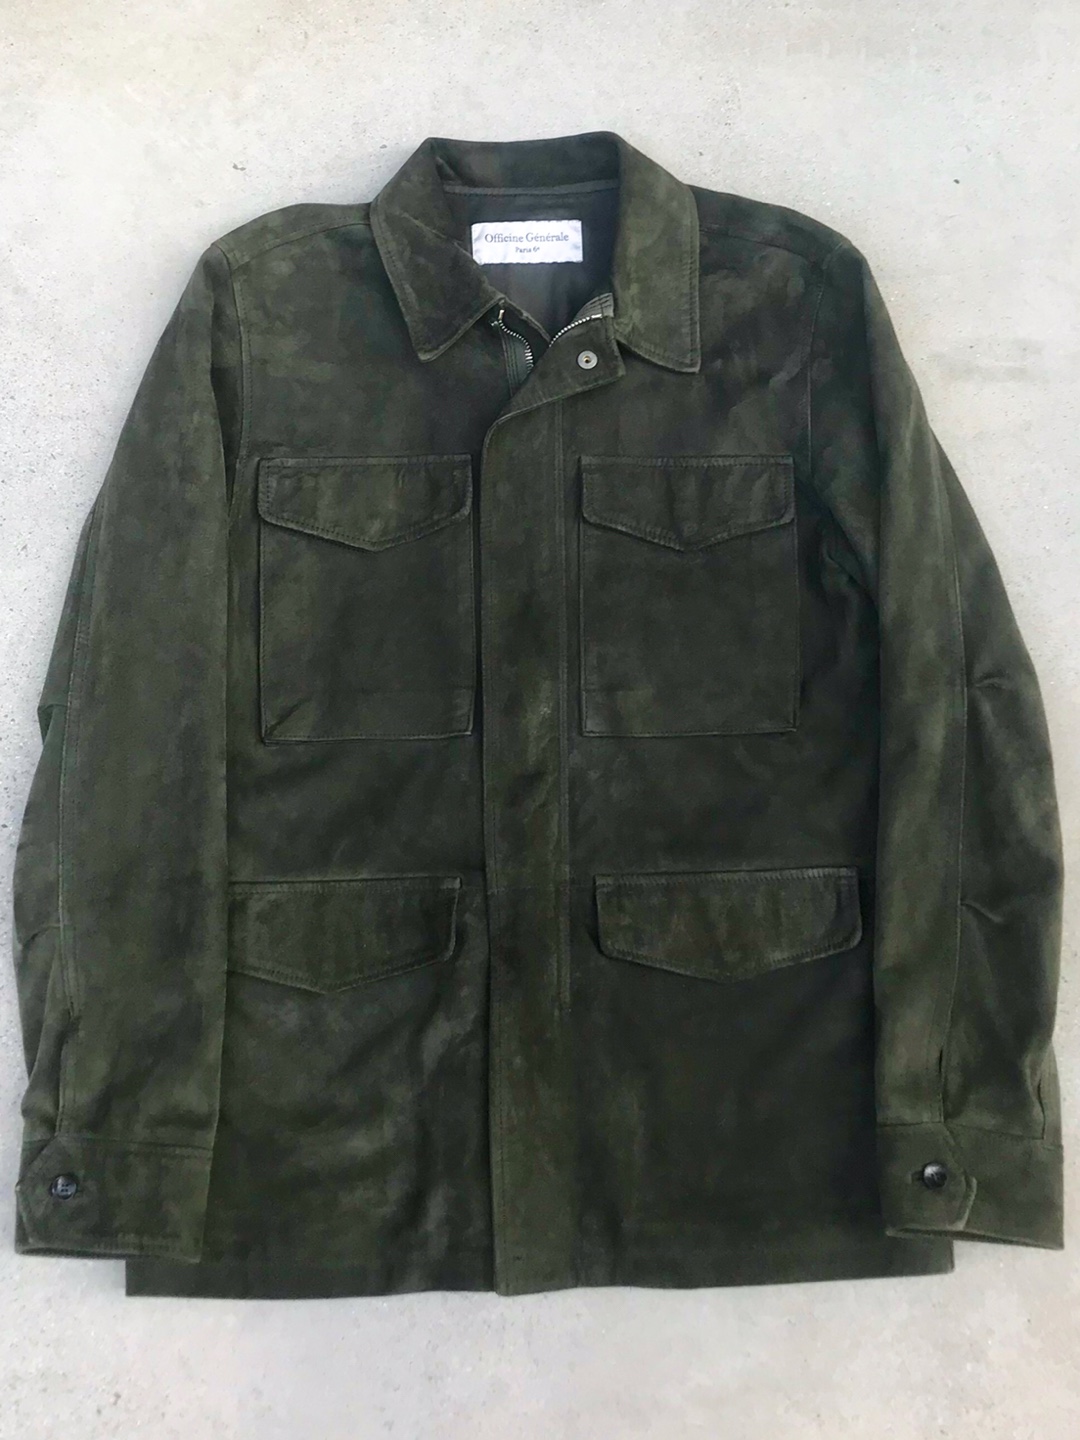 officine general dark olive suede field jacket (S size, ~100 추천)